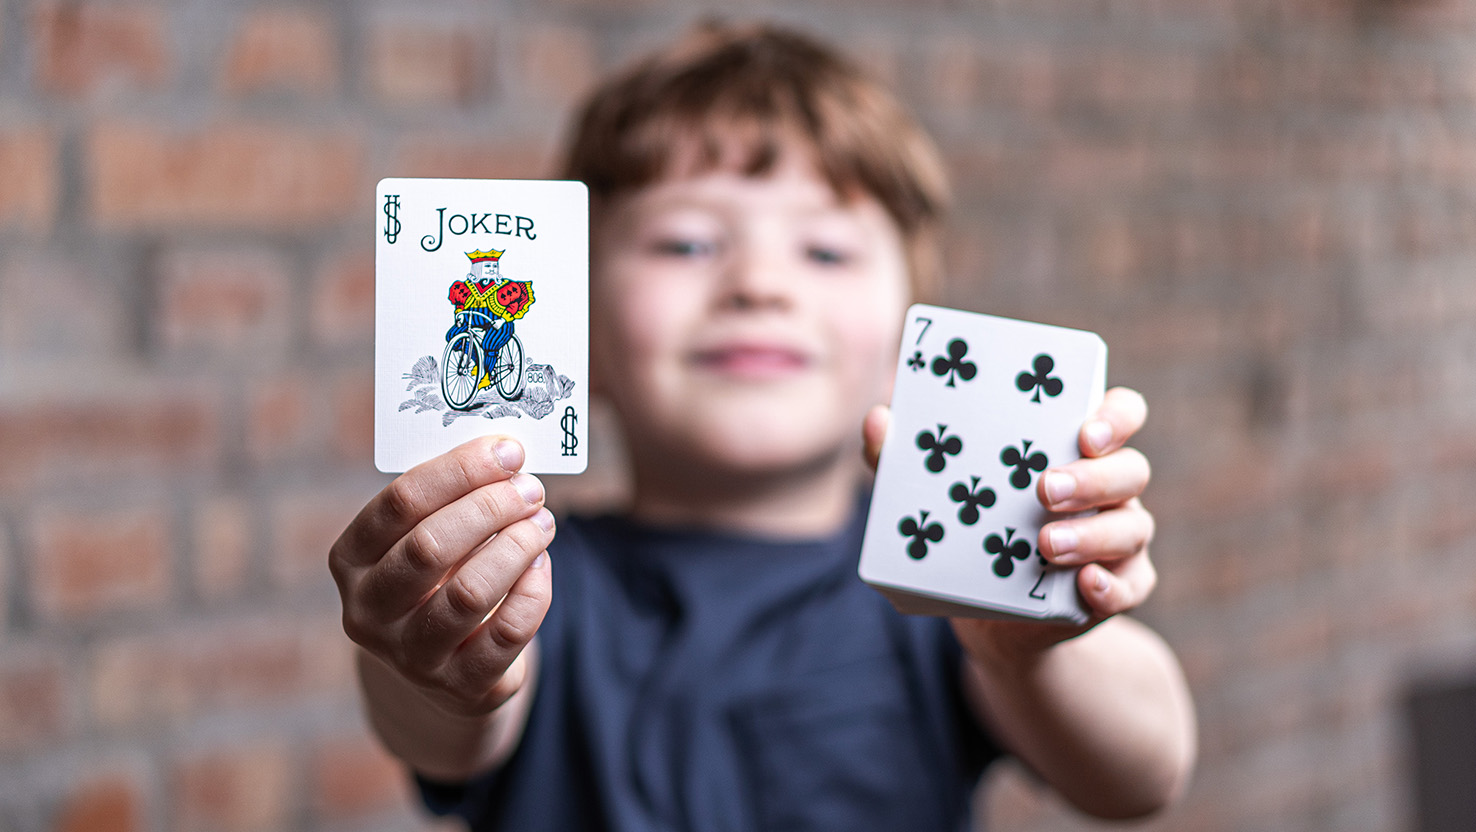 Ein Junge führt stolz einen Zaubertrick vor und zeigt die Bicycle Joker Karte hoch.